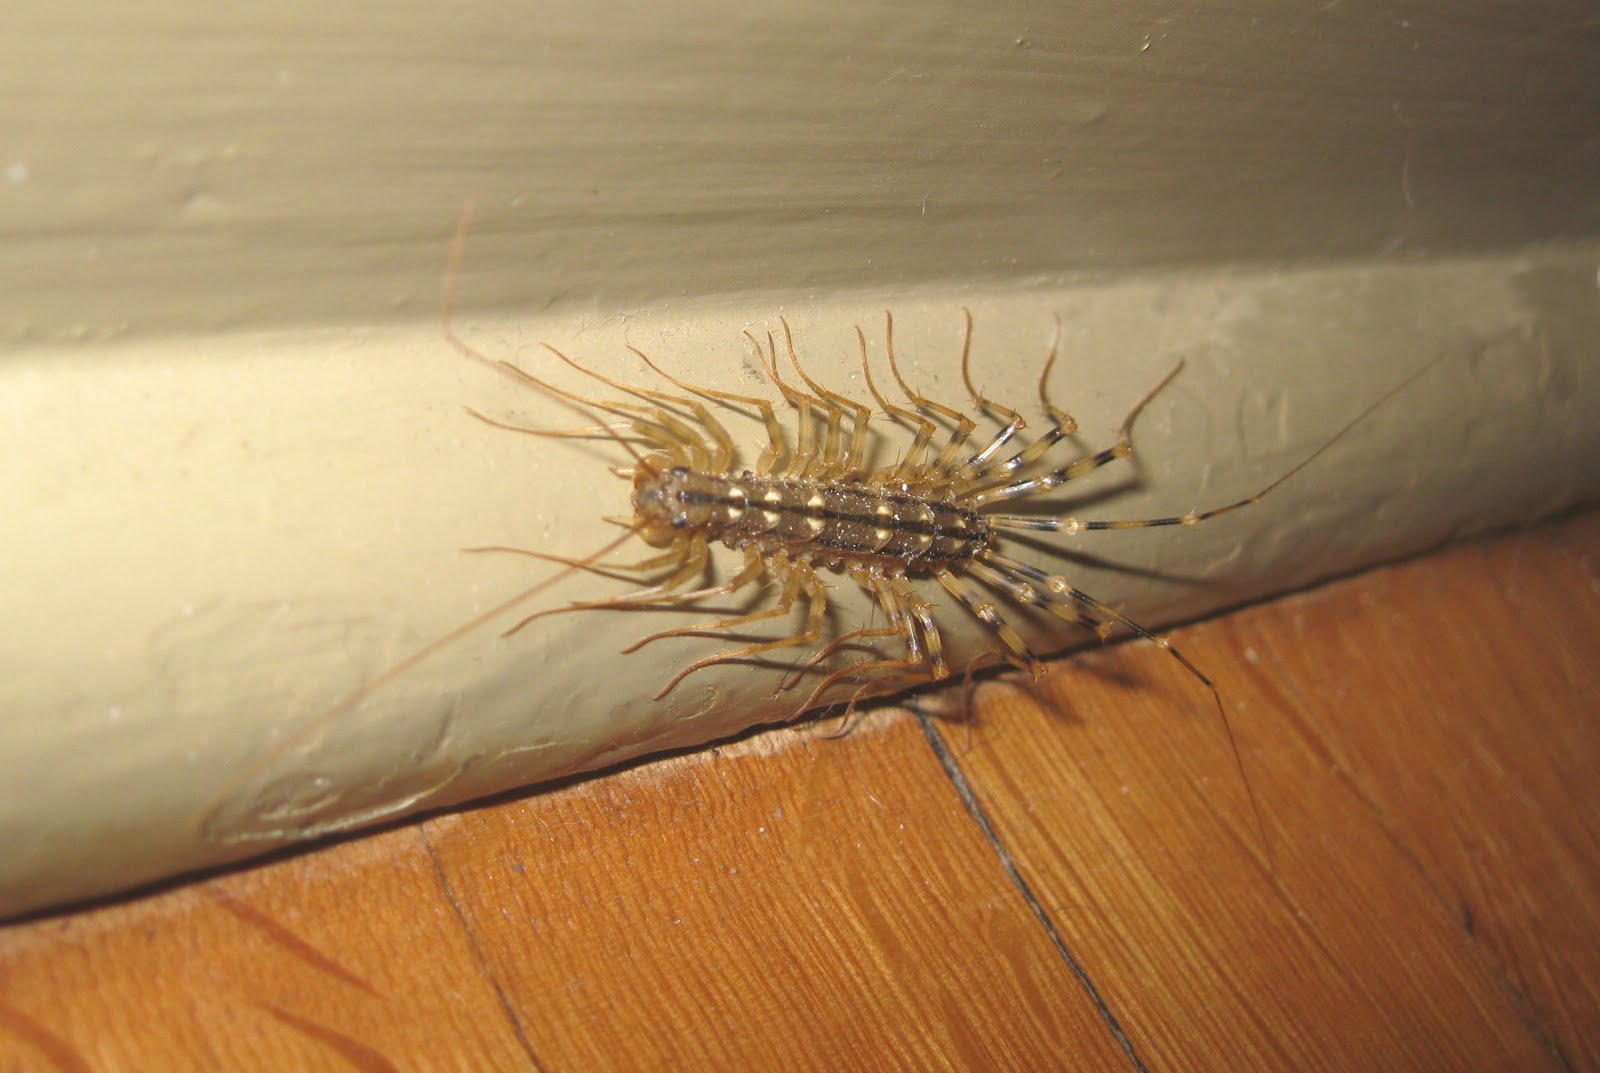 House Centipede Bite Marks